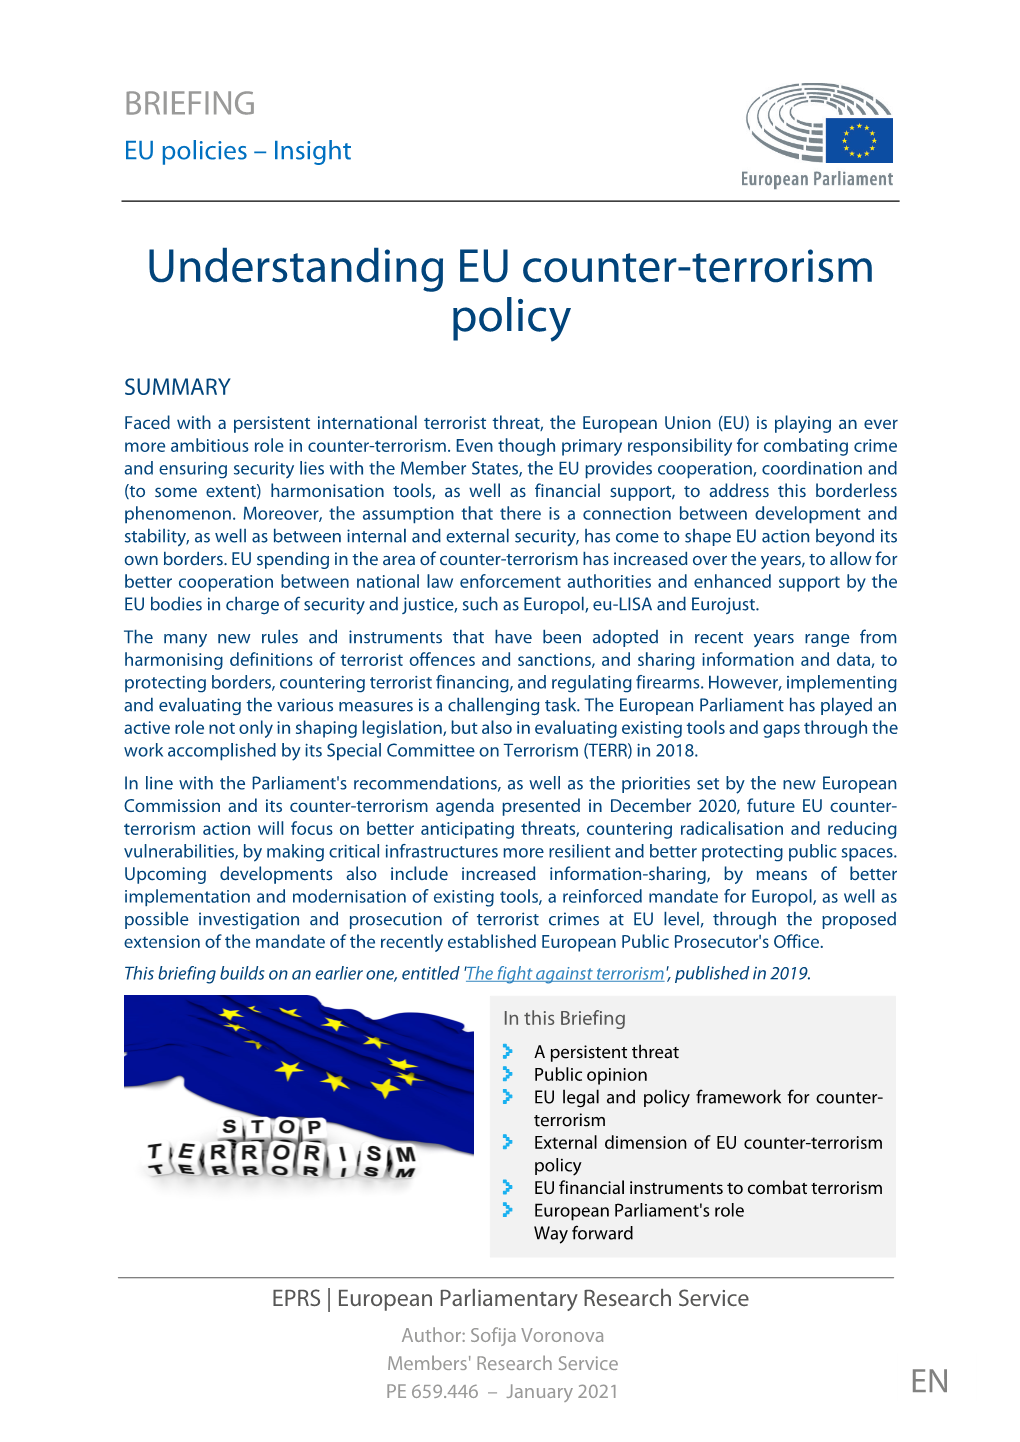 Understanding EU Counter-Terrorism Policy